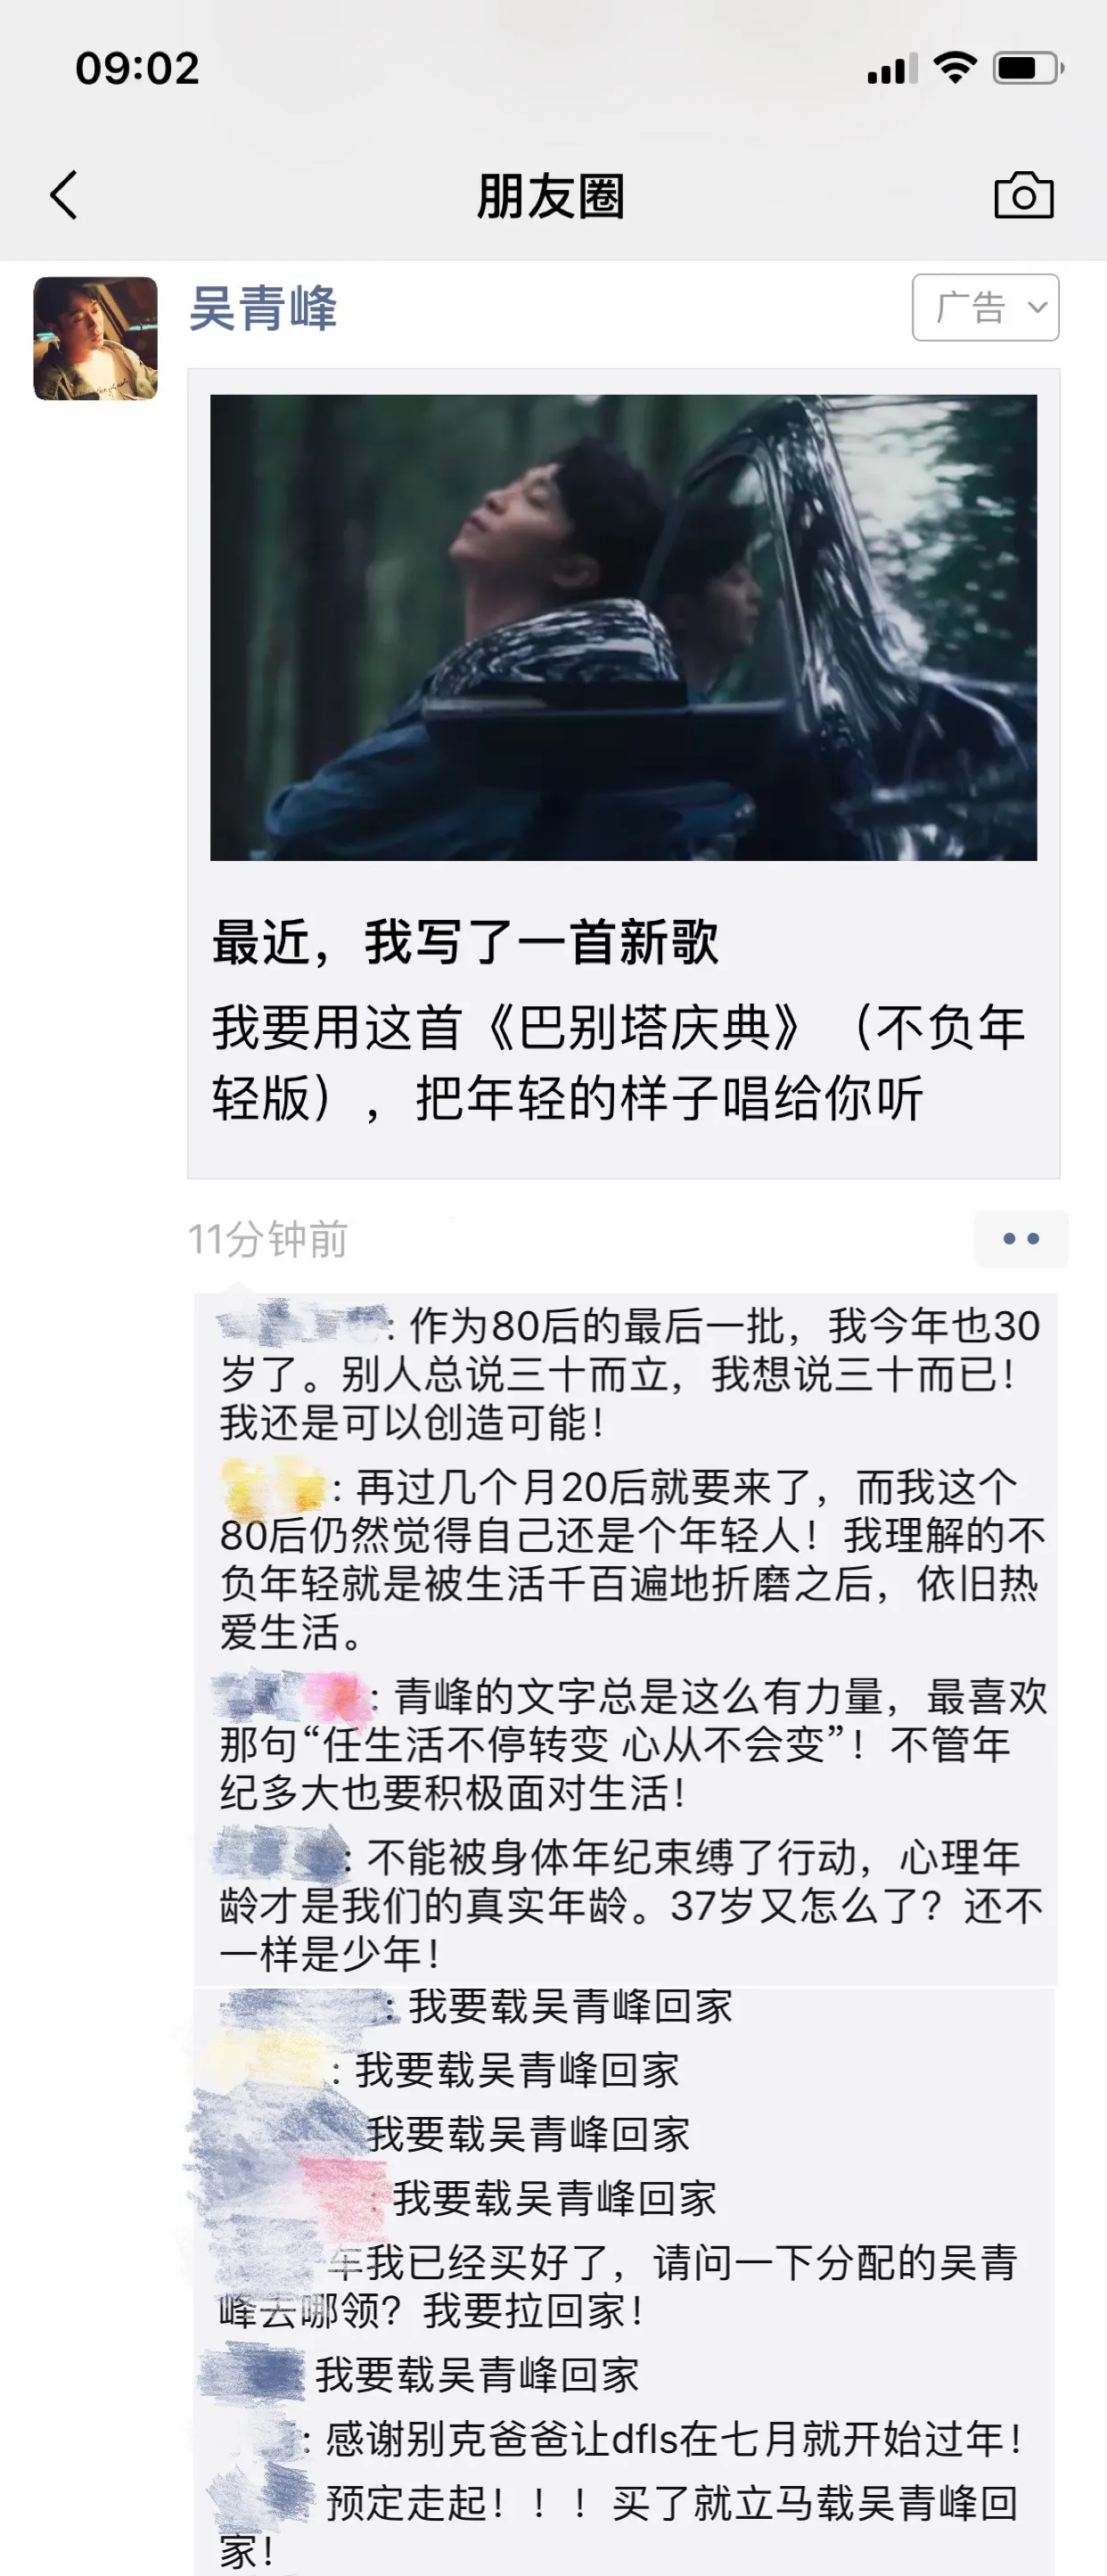  Wu Tsing-Fong 代言昂科拉GX朋友圈广告成留言圣地.jpg